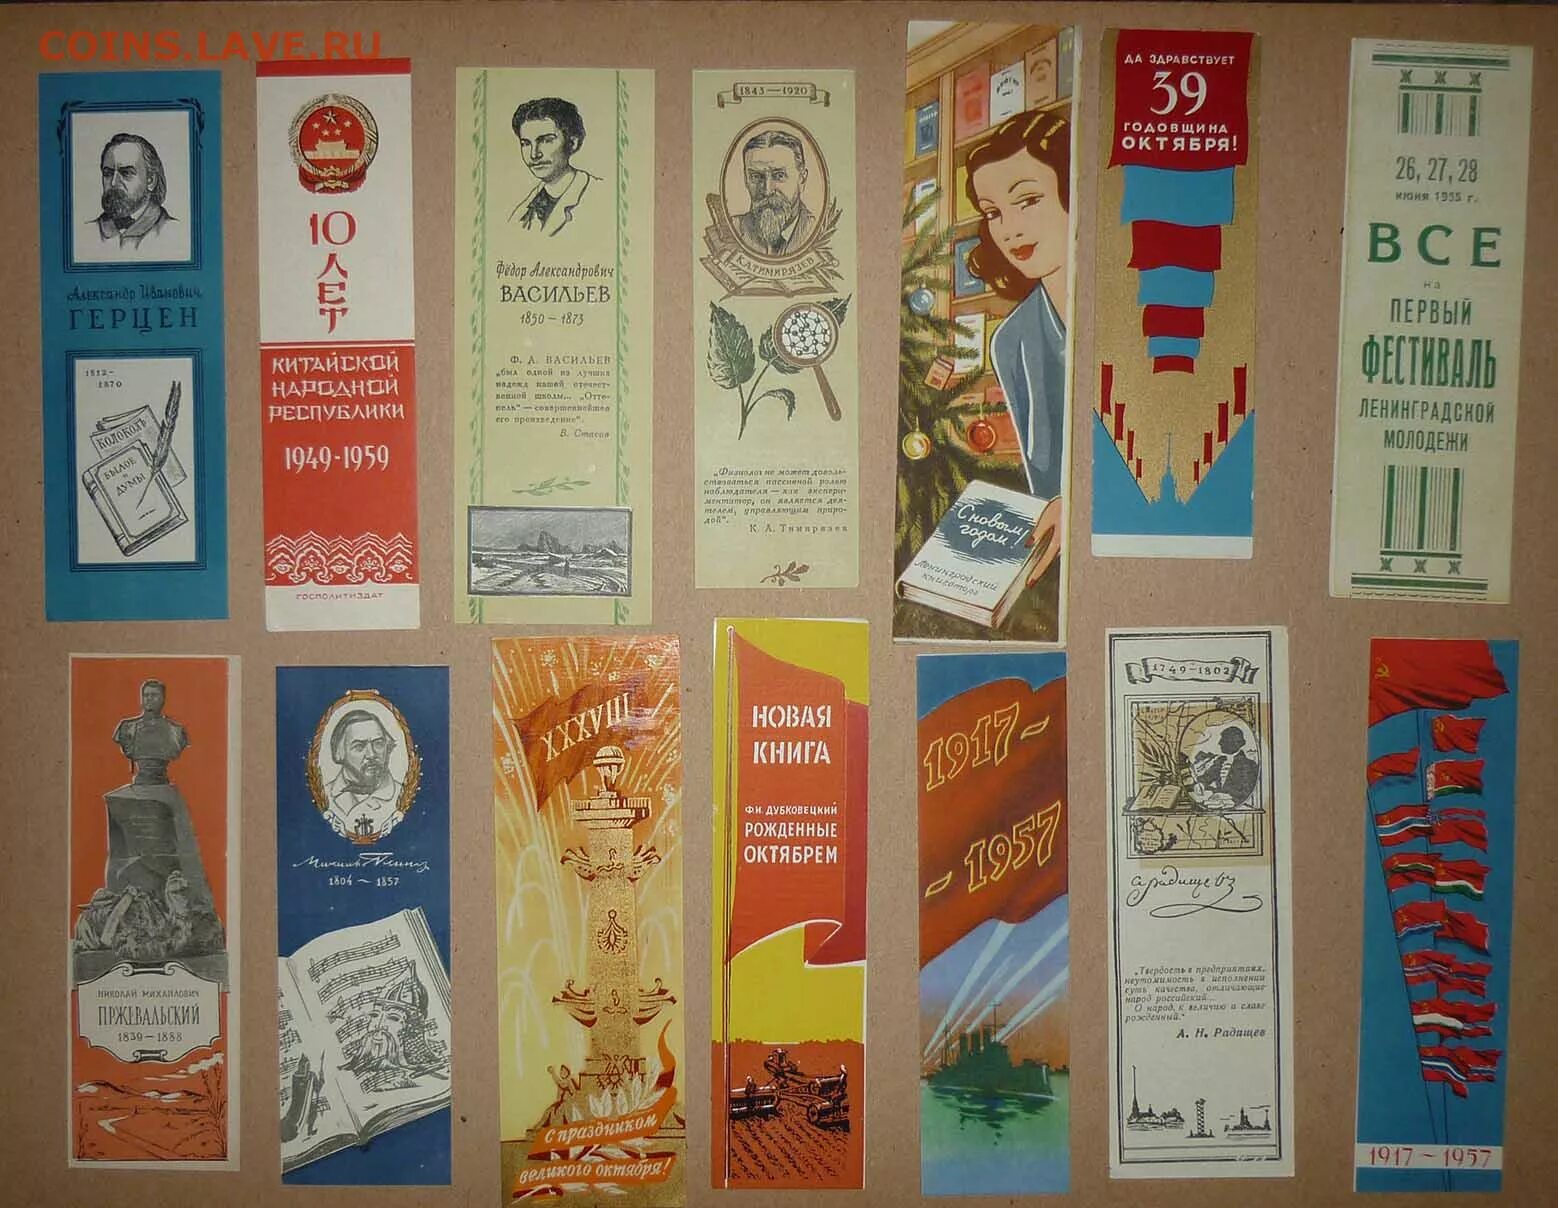 Читать закладки книг. Закладка для книг. Рекламные закладки для книг. Советские закладки для книг. Старинные книжные закладки.